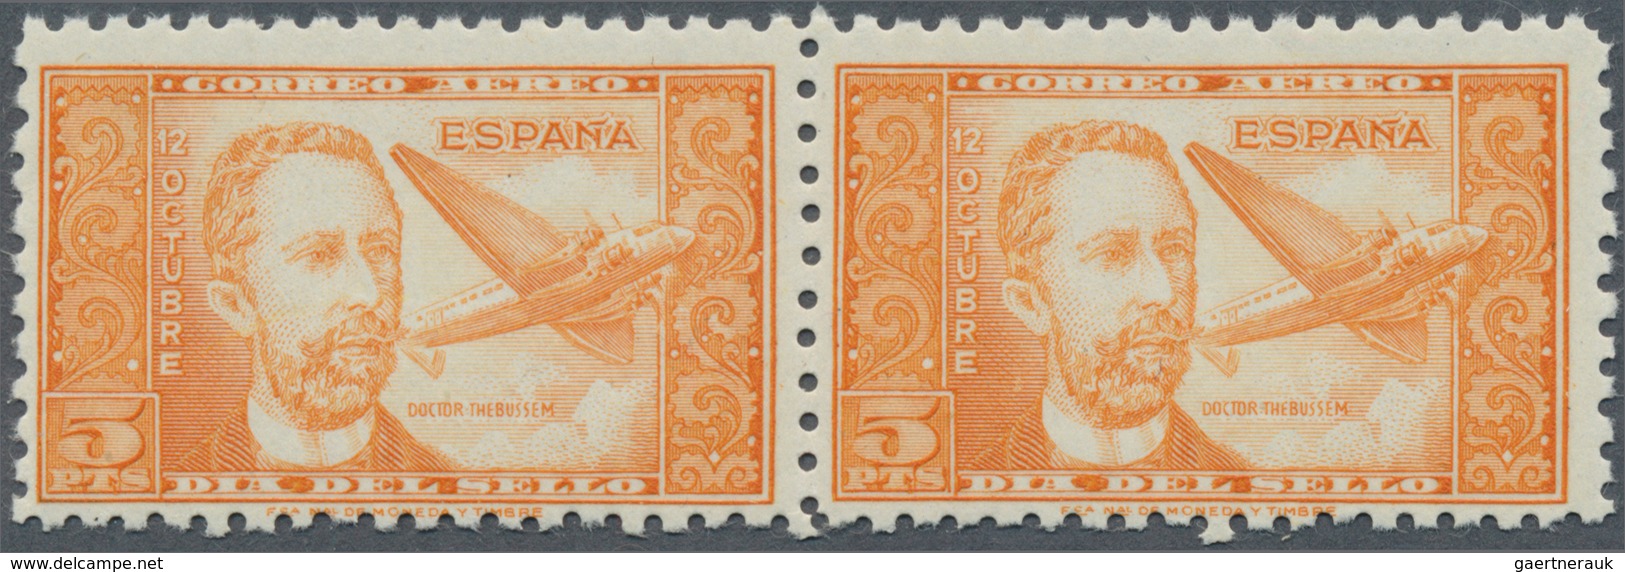 Spanien: 1944, Airmail Stamp 5pts. "Dr.Thebussem", Color Variety "orange", Horiz. Pair, Unmounted Mi - Gebraucht